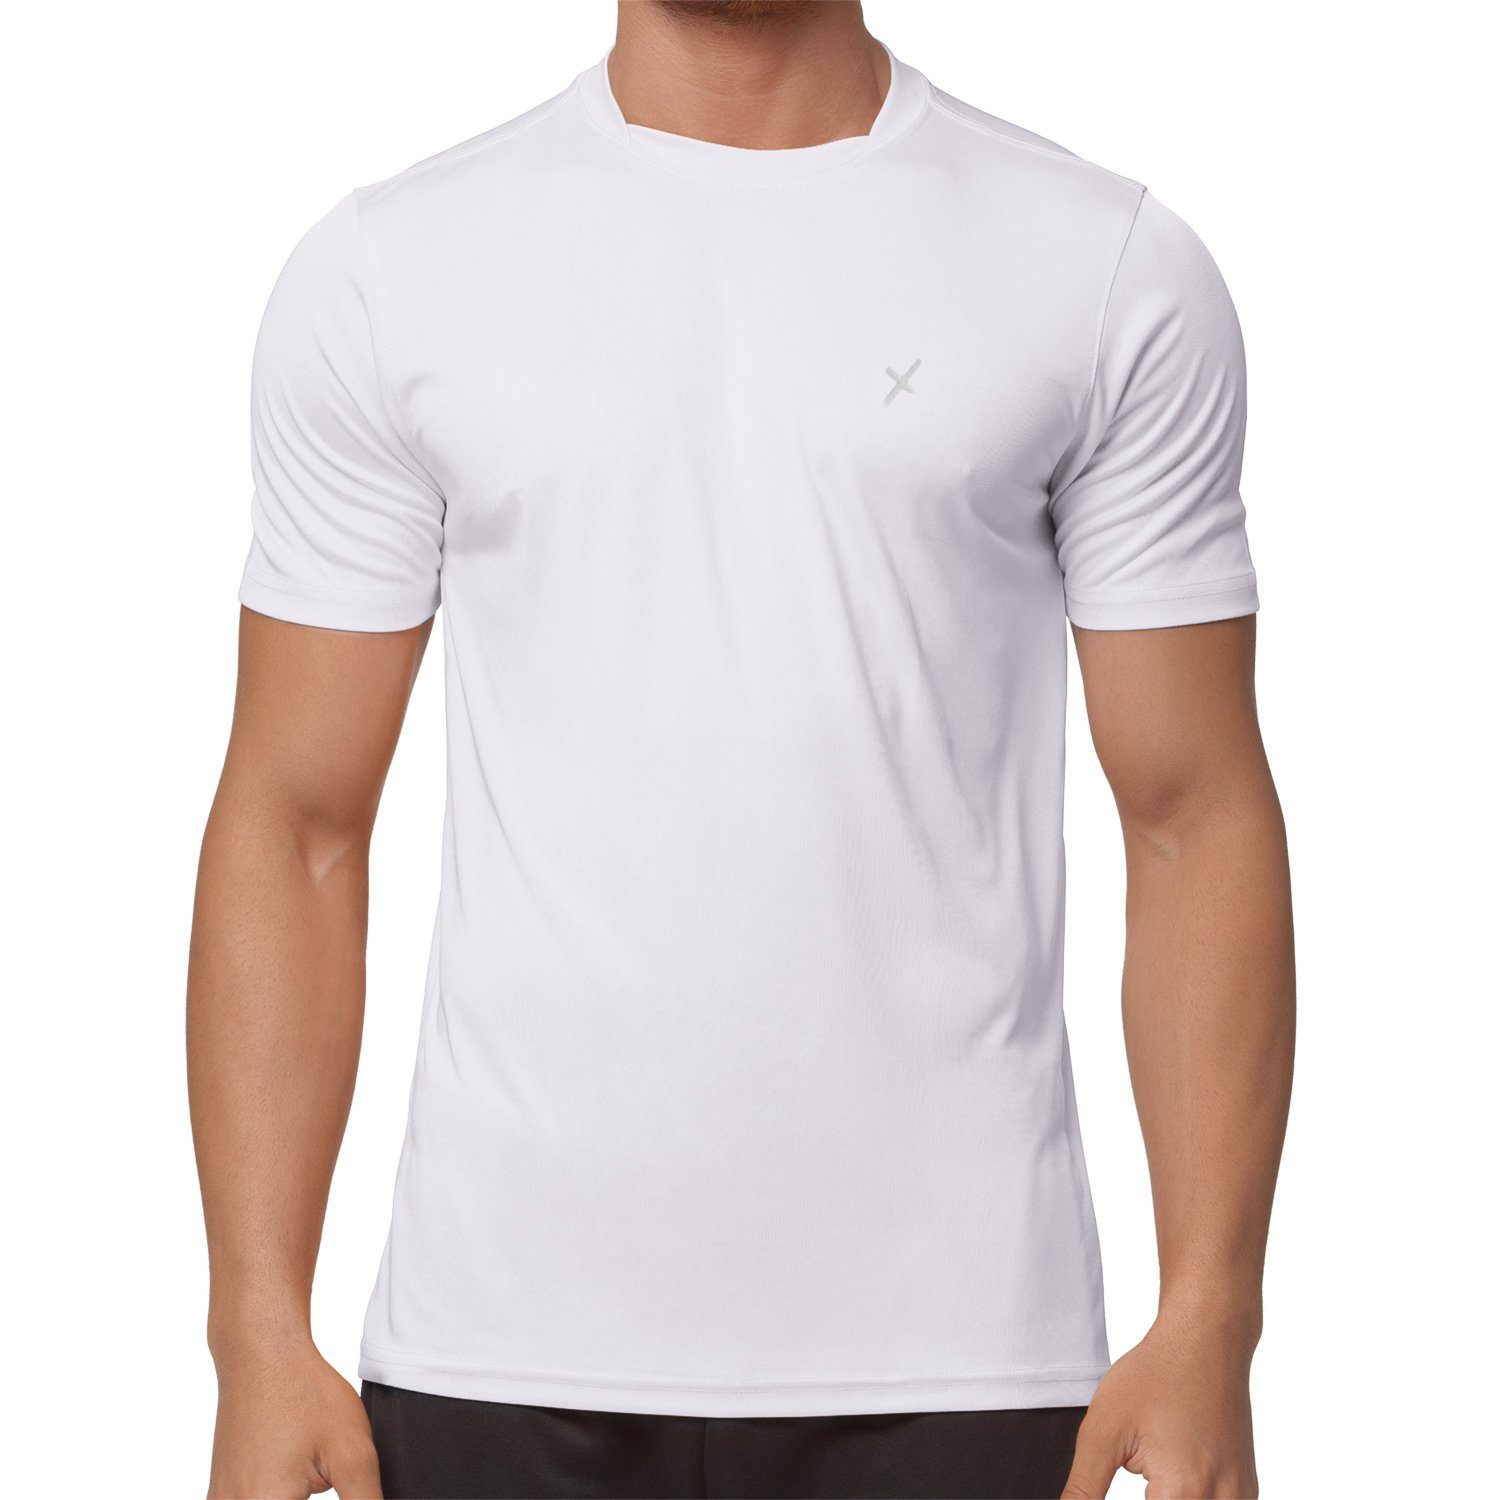 CFLEX Sport Shirt Herren Fitness Sportswear Trainingsshirt Collection T-Shirt Weiß